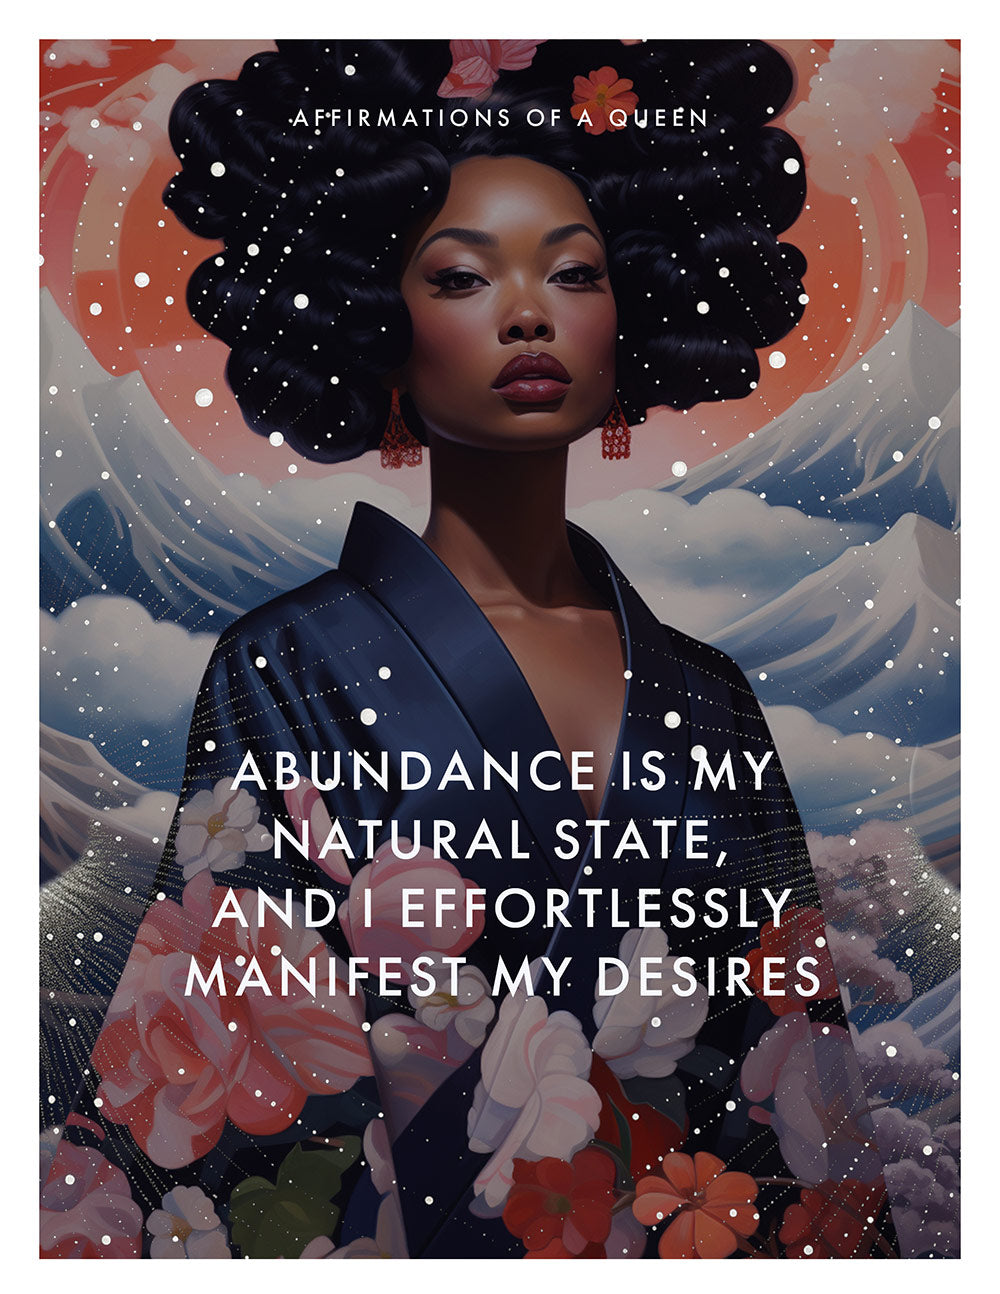 Affirmations of A Queen - Abundance